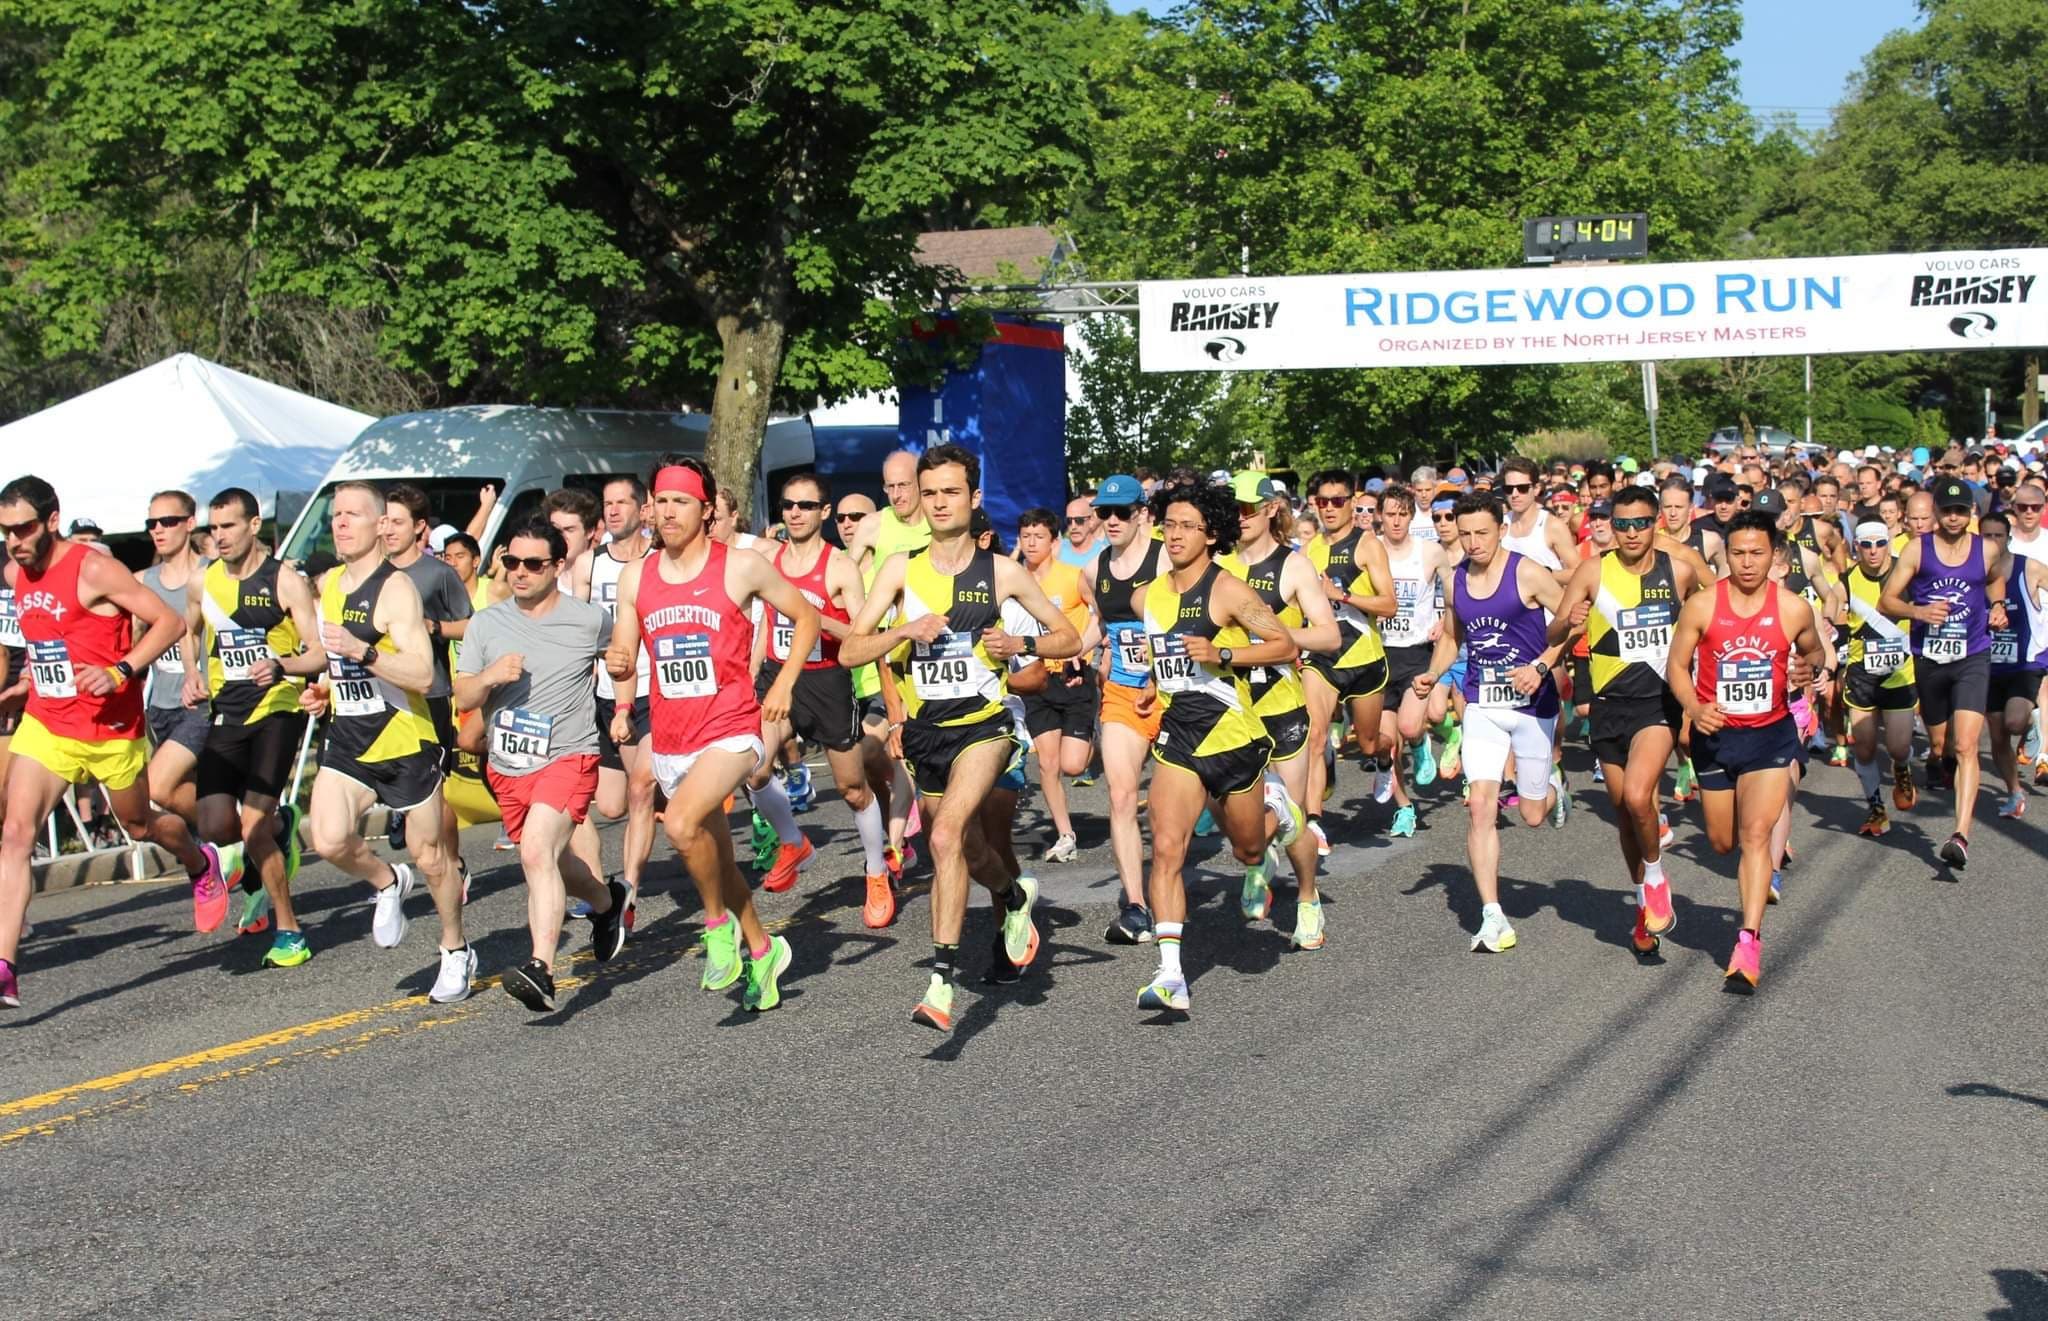 The Ridgewood Run